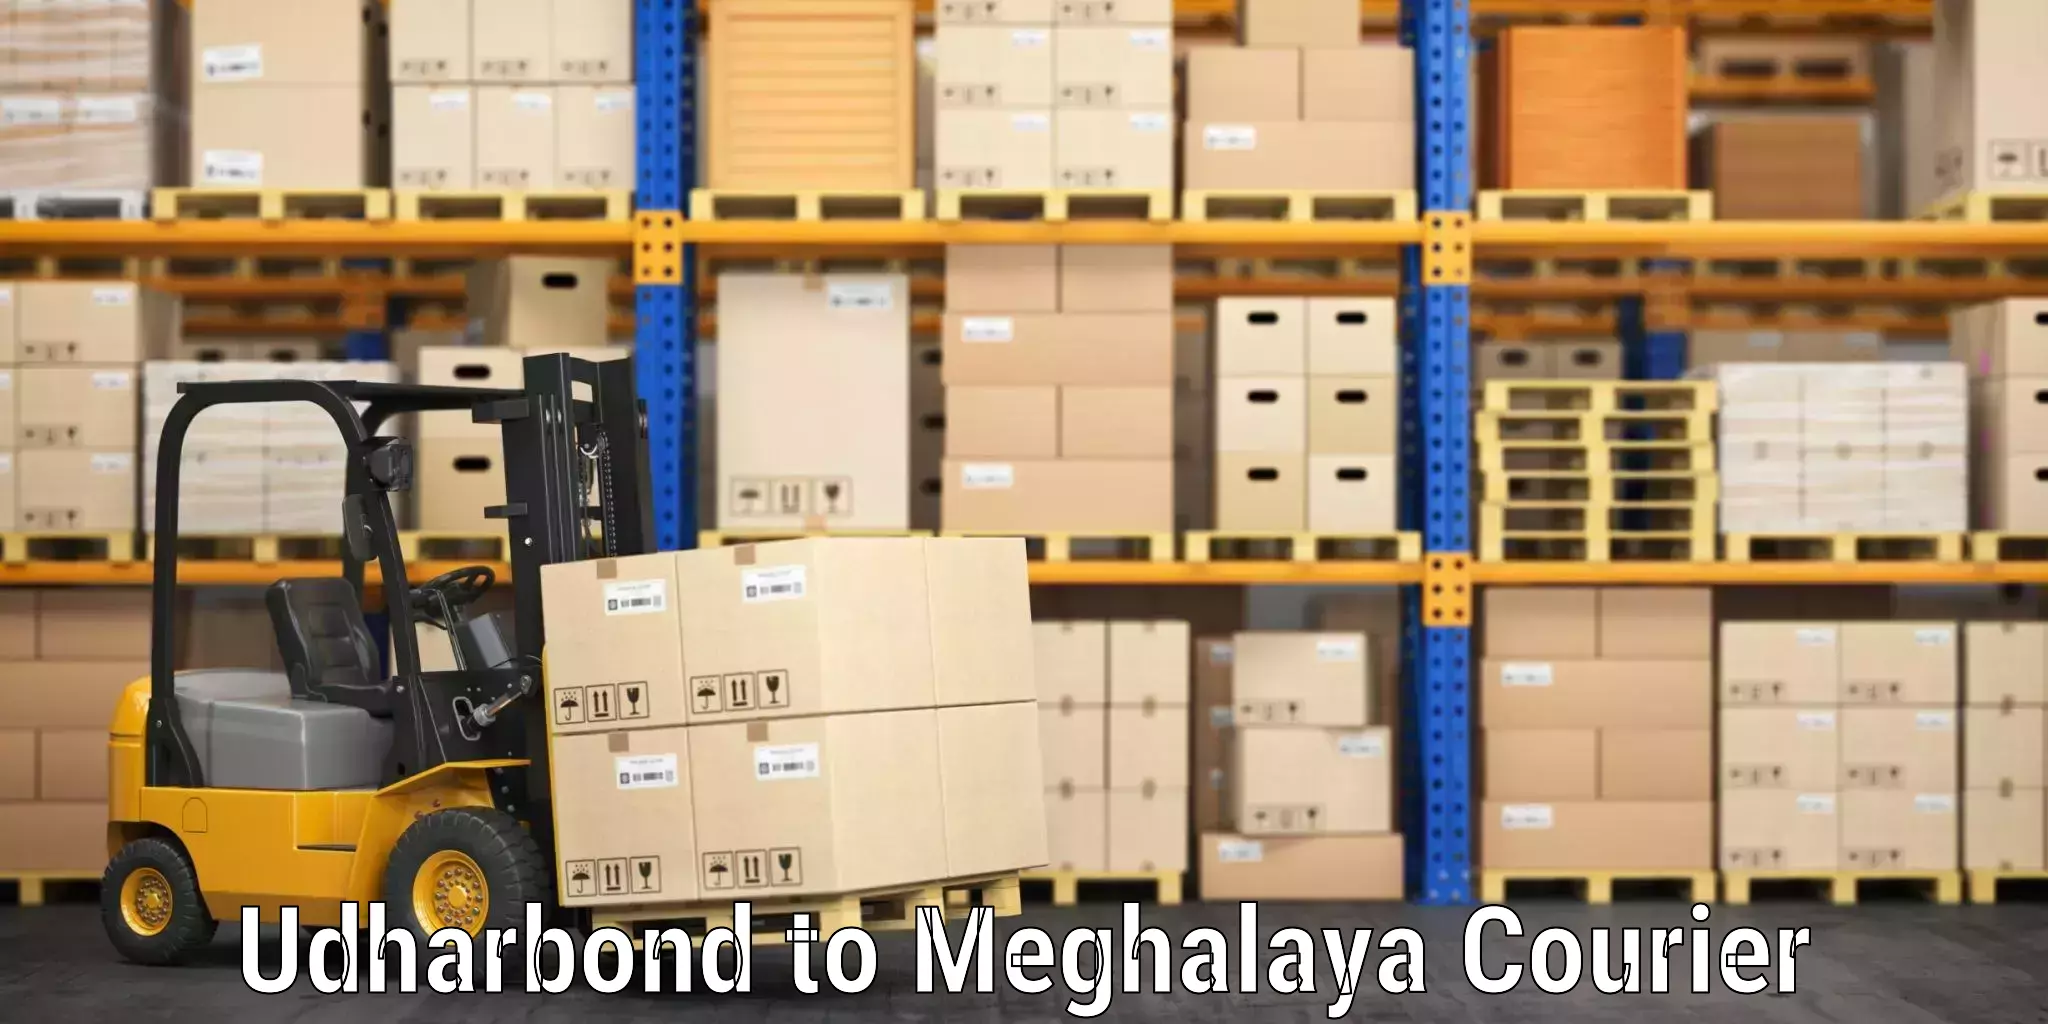 Baggage delivery optimization Udharbond to Meghalaya